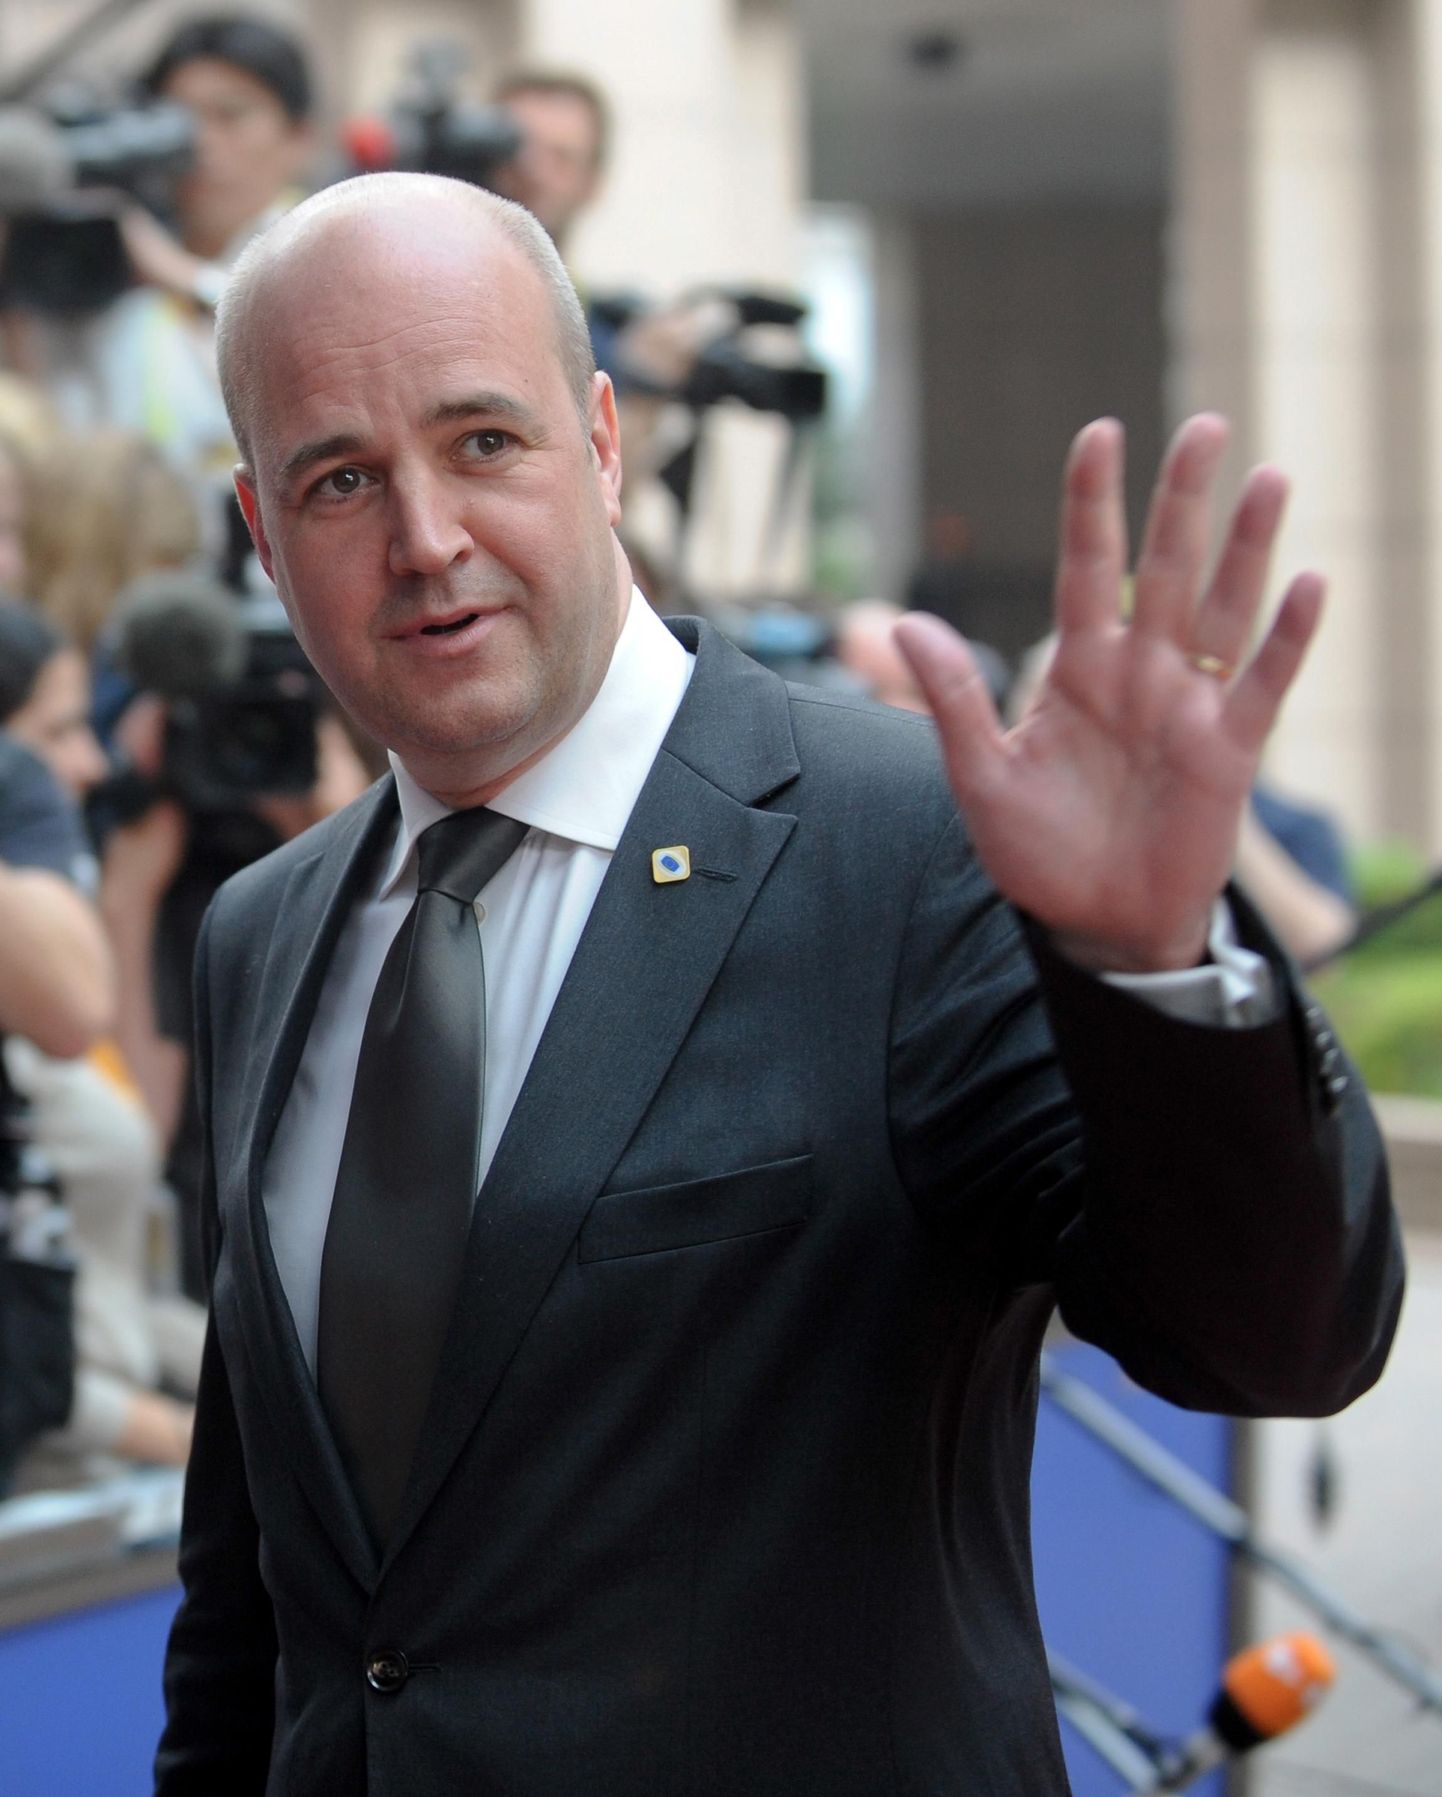 Rootsi peaminister Fredrik Reinfeldt